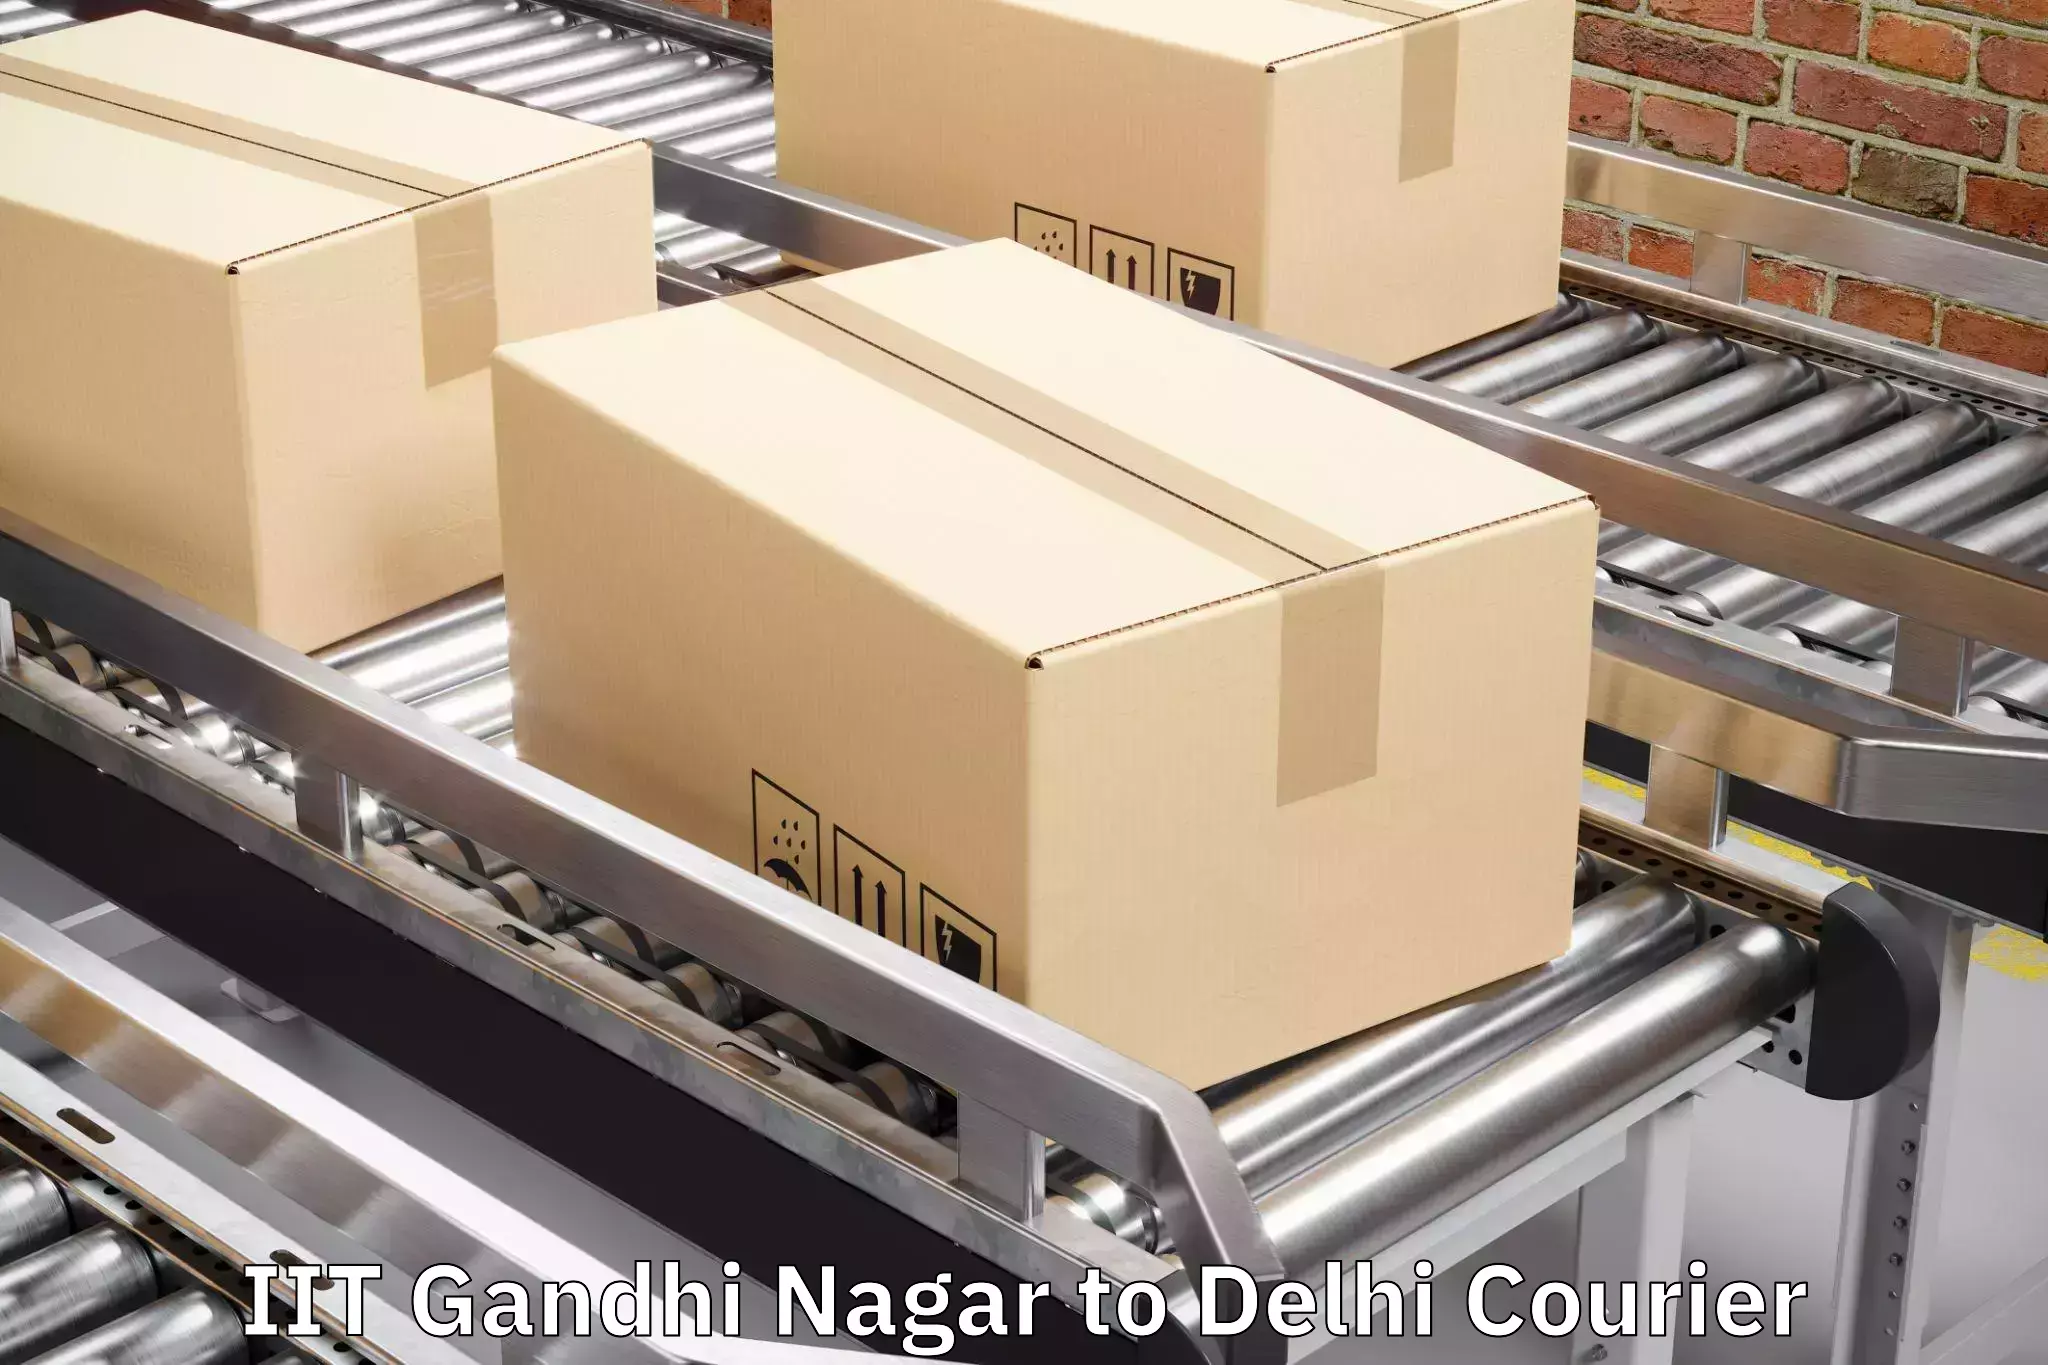 Baggage shipping experience in IIT Gandhi Nagar to Ashok Vihar